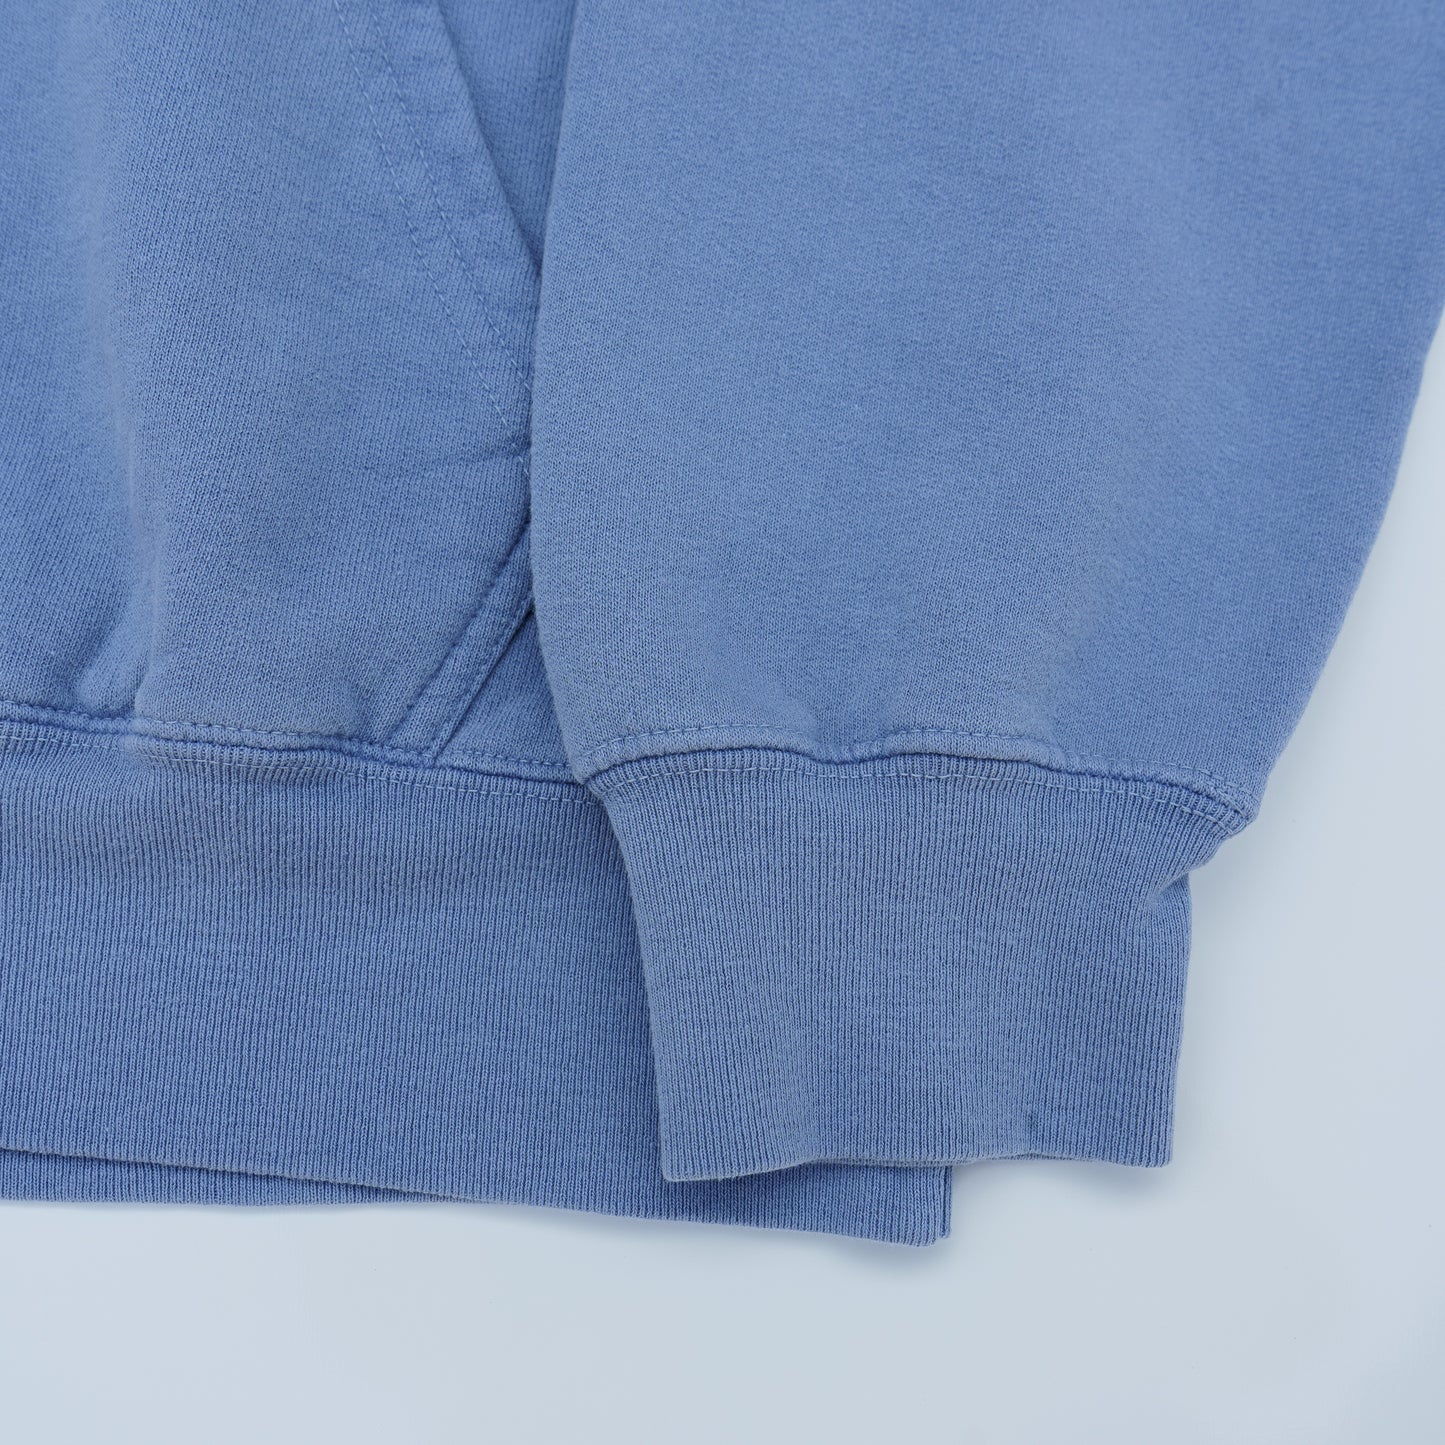 The Motier Sportswear Hoodie (Slate Blue)